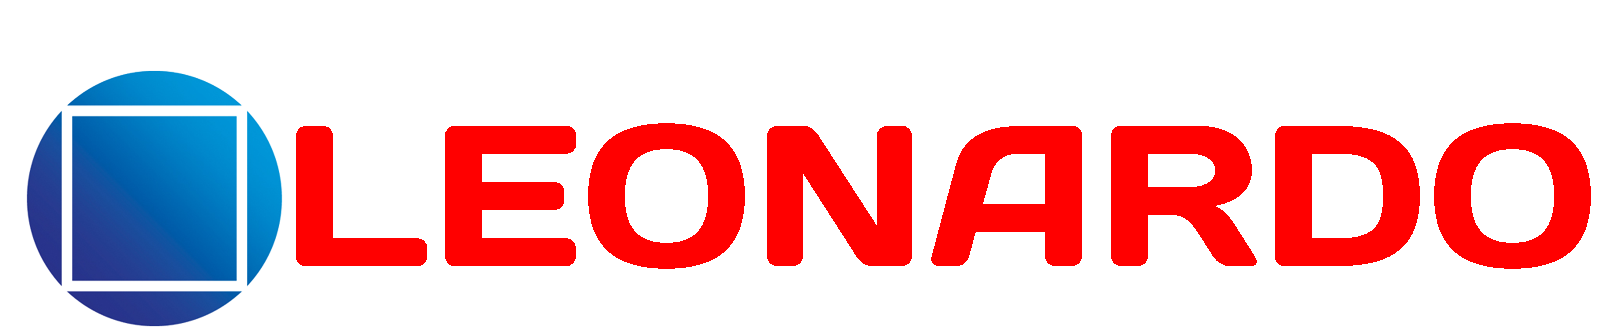 логотип компании www.leonardo.kz